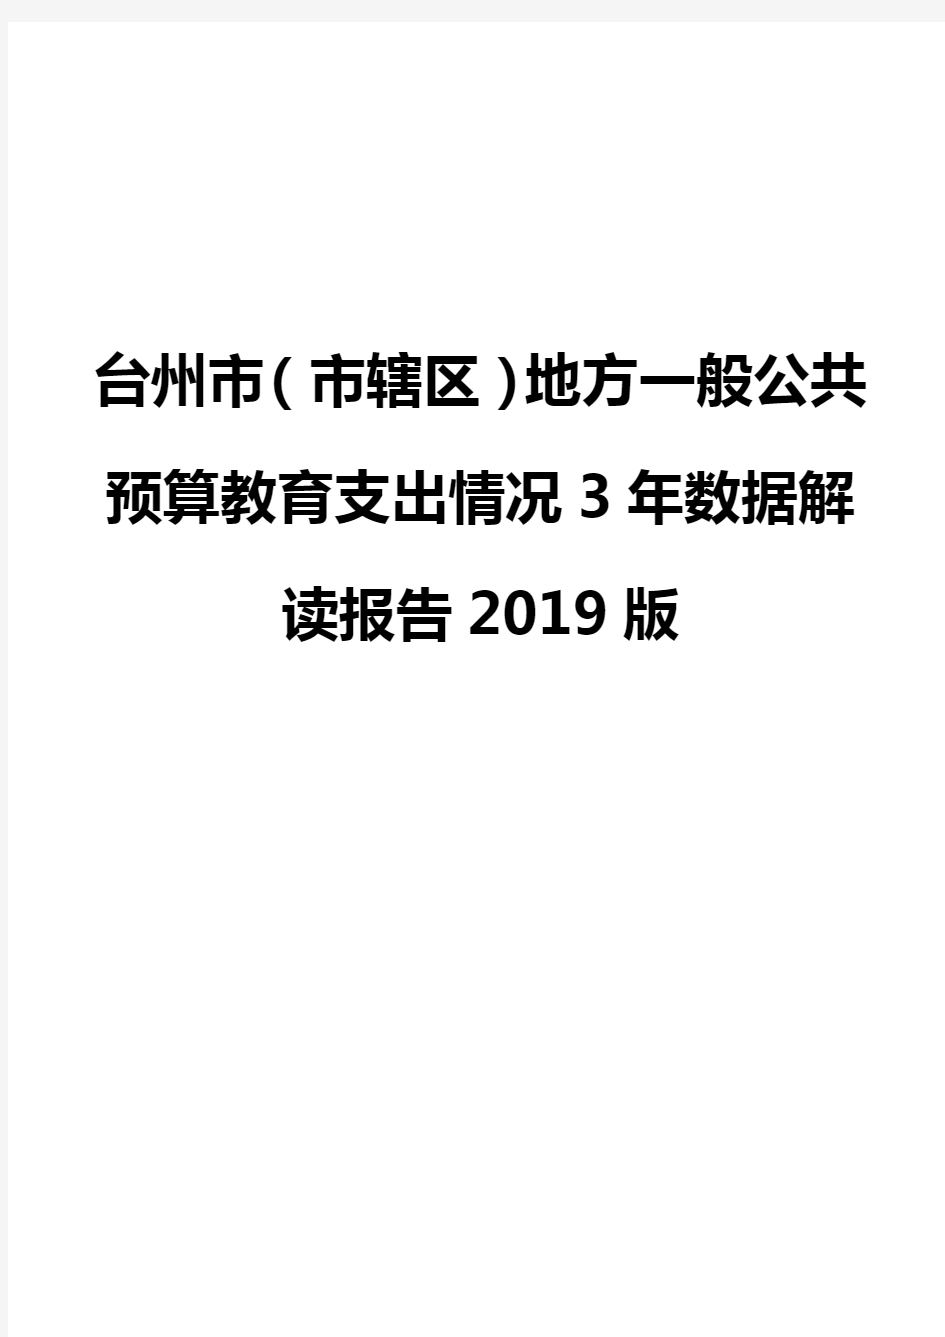 台州市(市辖区)地方一般公共预算教育支出情况3年数据解读报告2019版